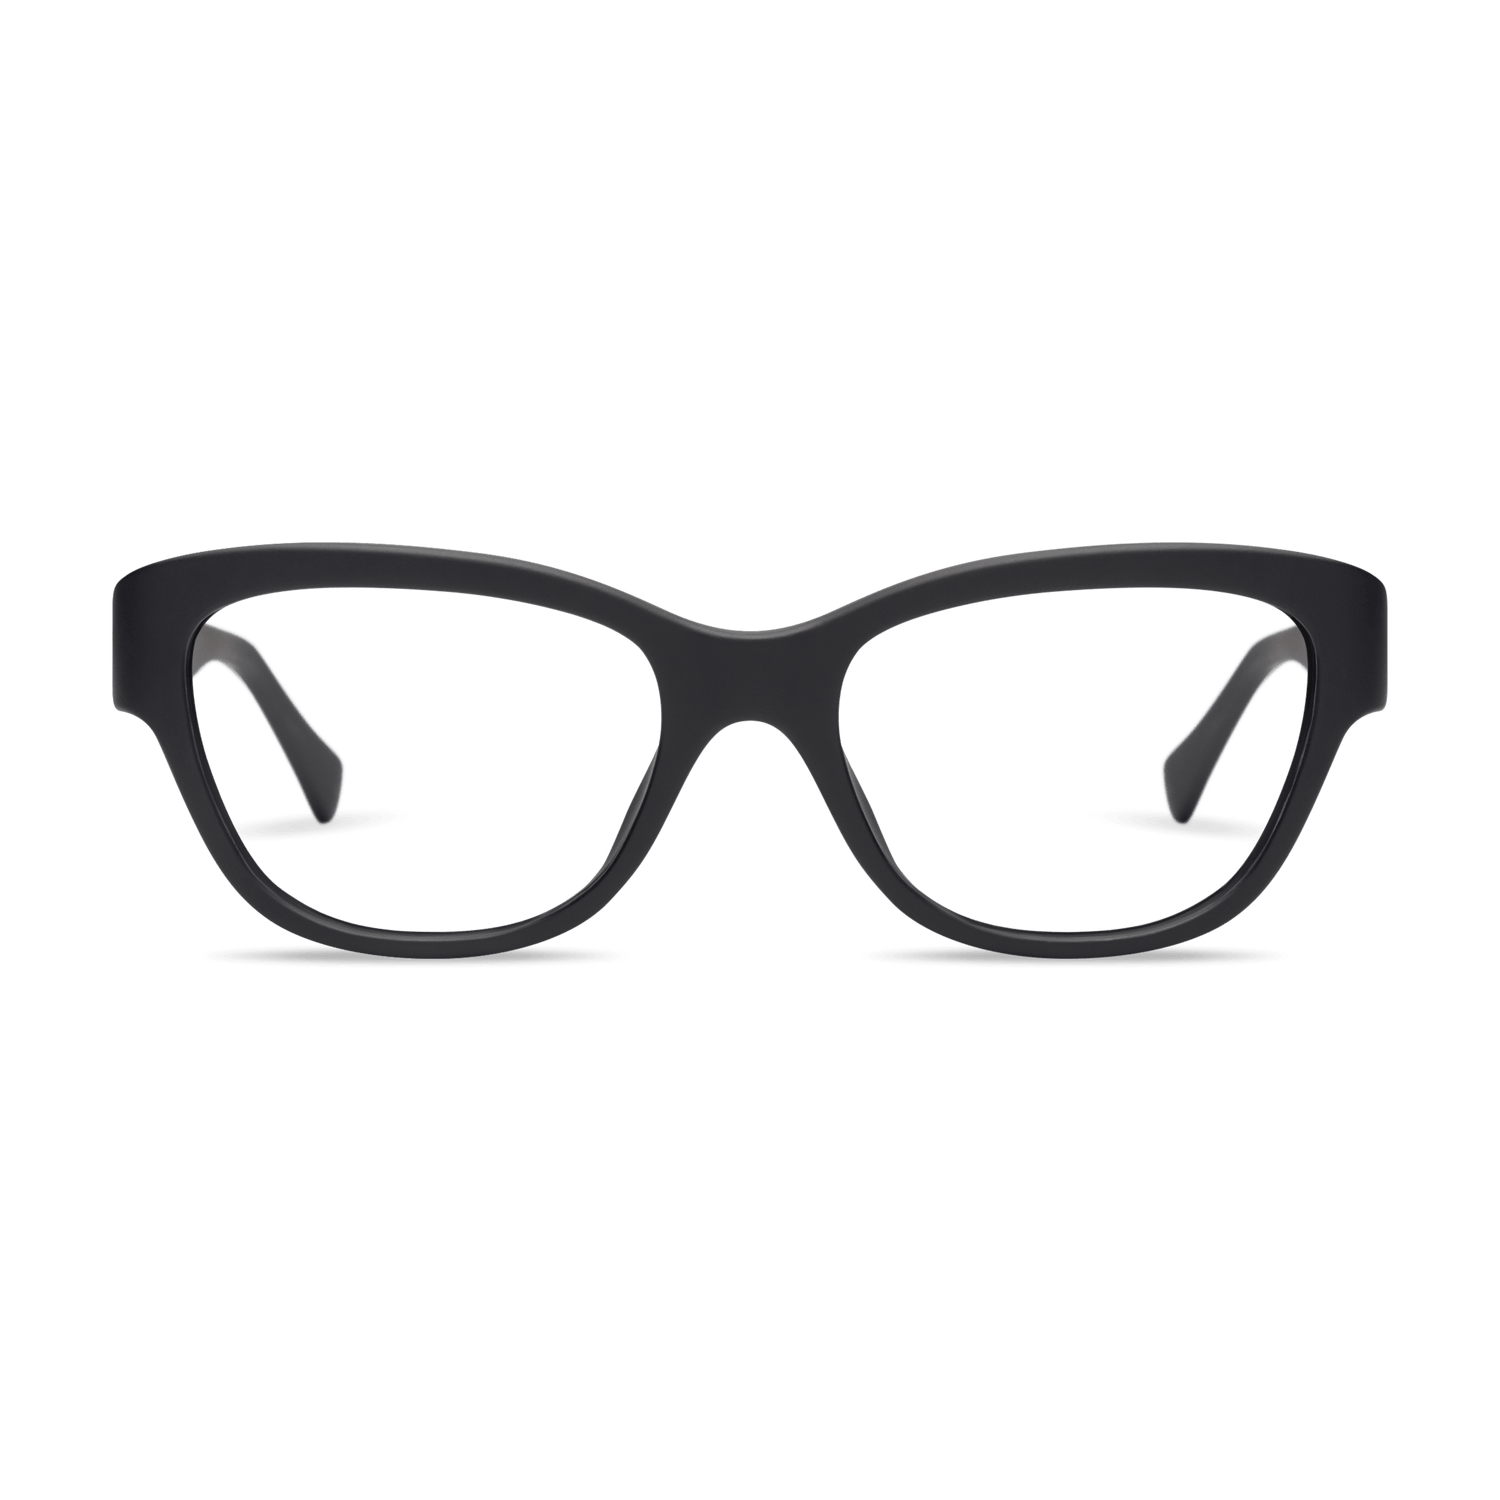 Milla Readers Eyeglasses LOOK OPTIC Black +1.00 